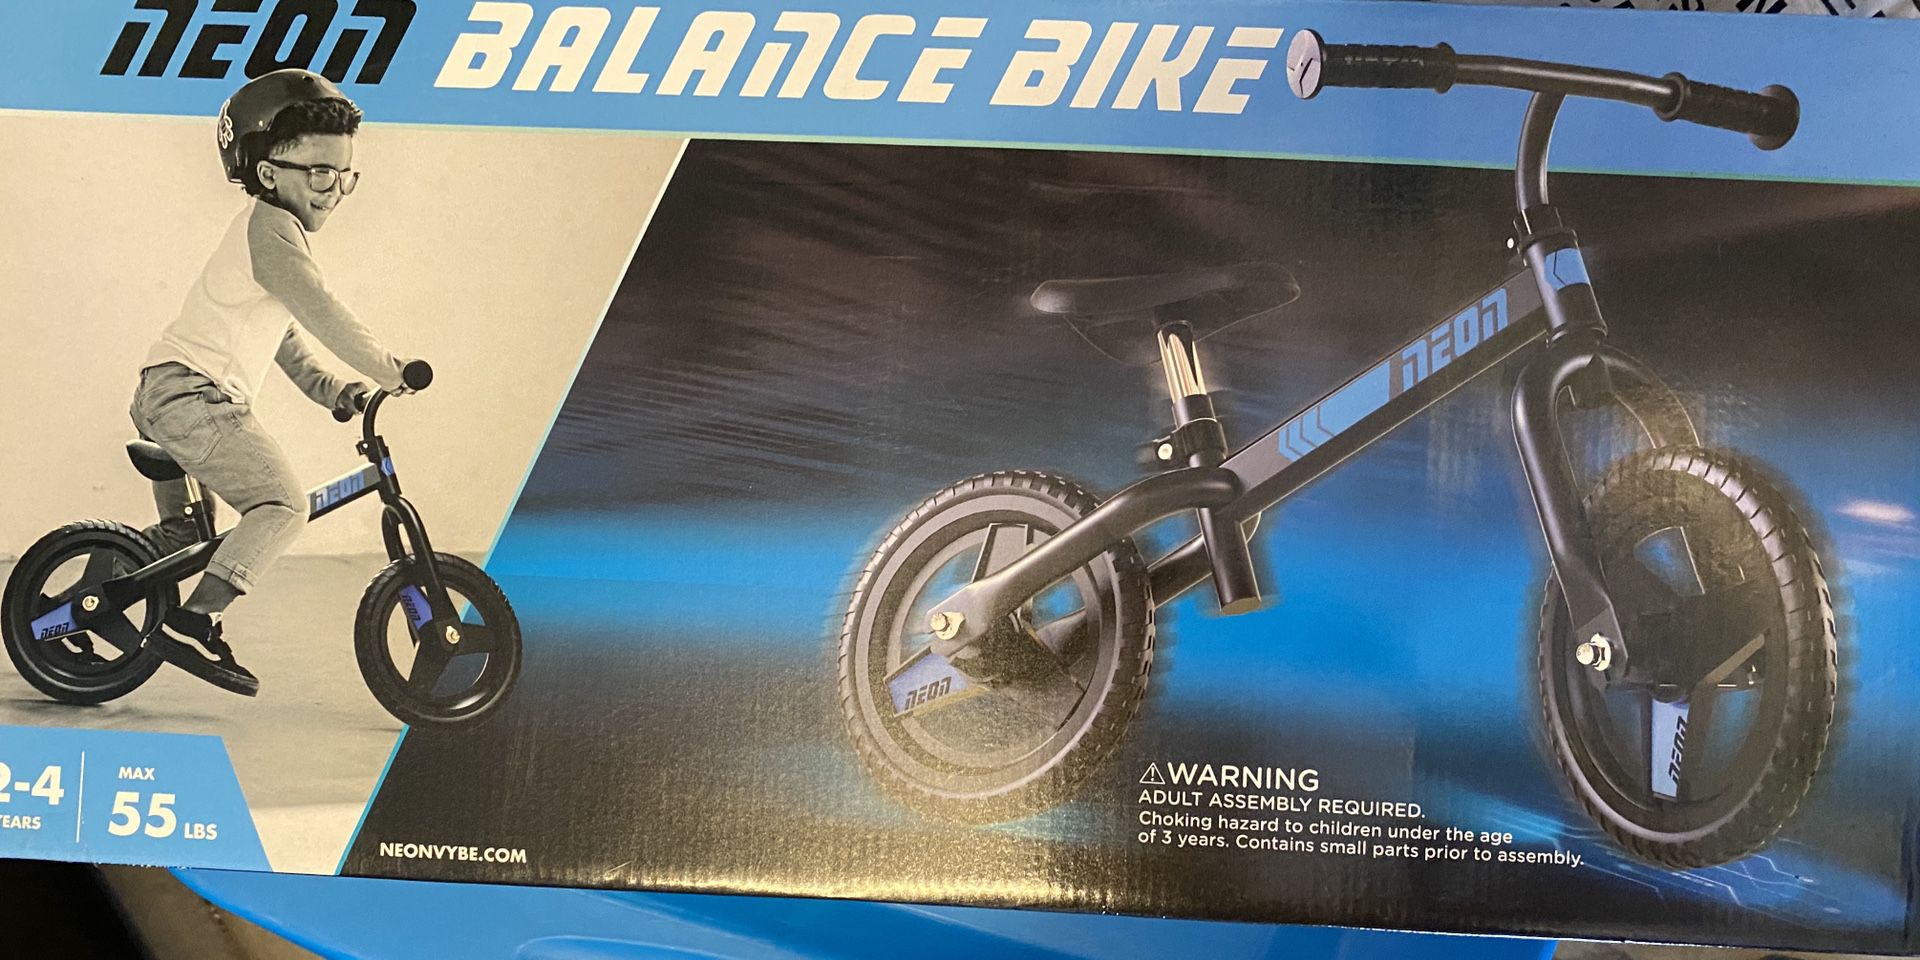 Neon balance bike